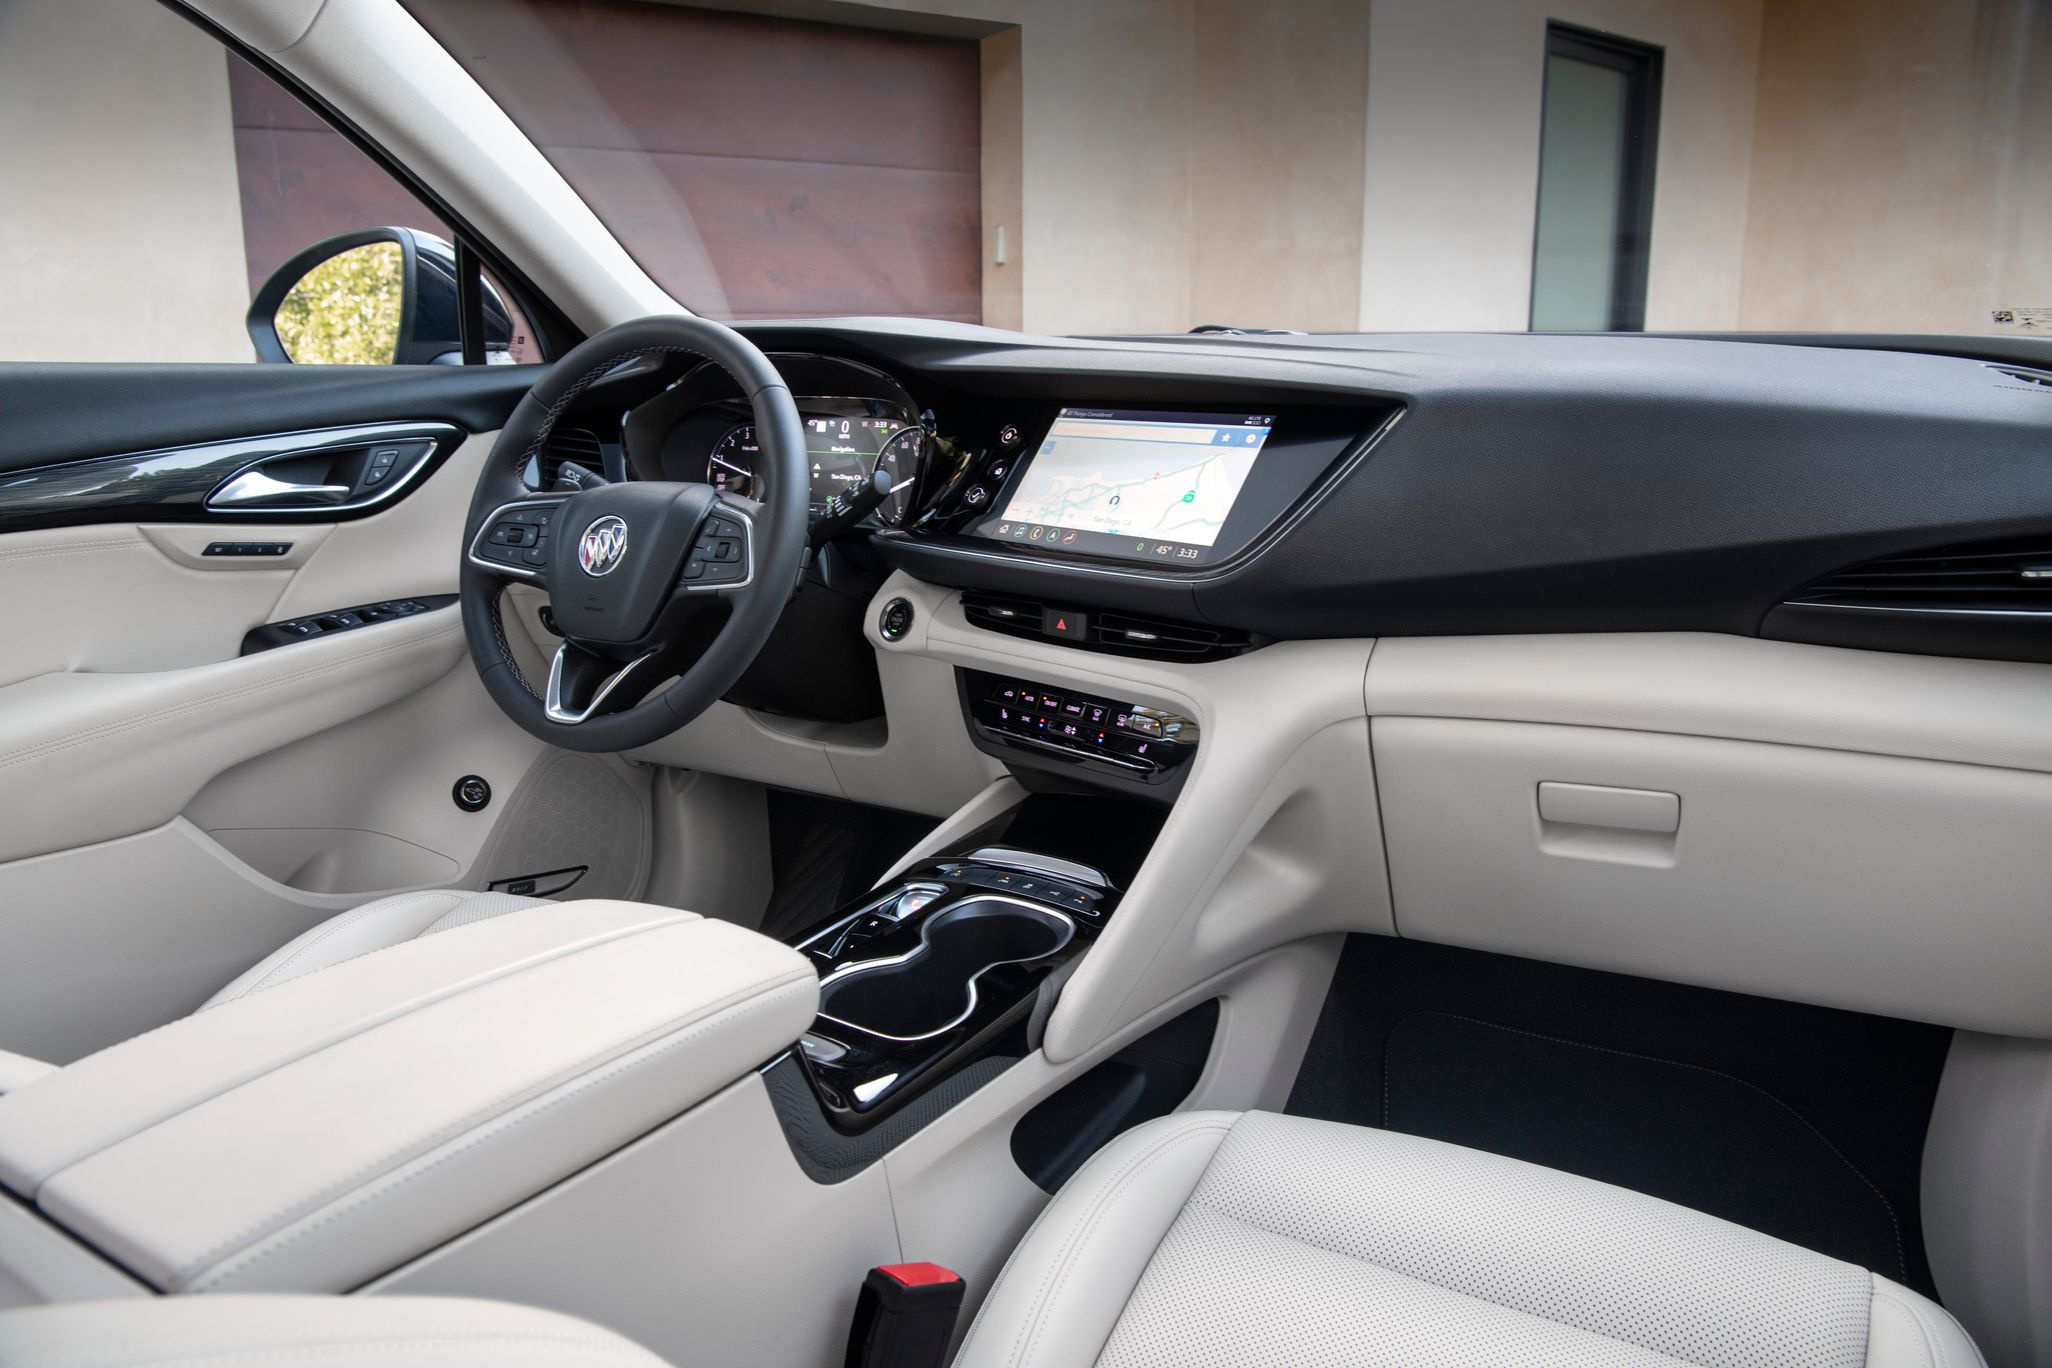 10 Best Car Interiors Under $50,000 - AutoTech News